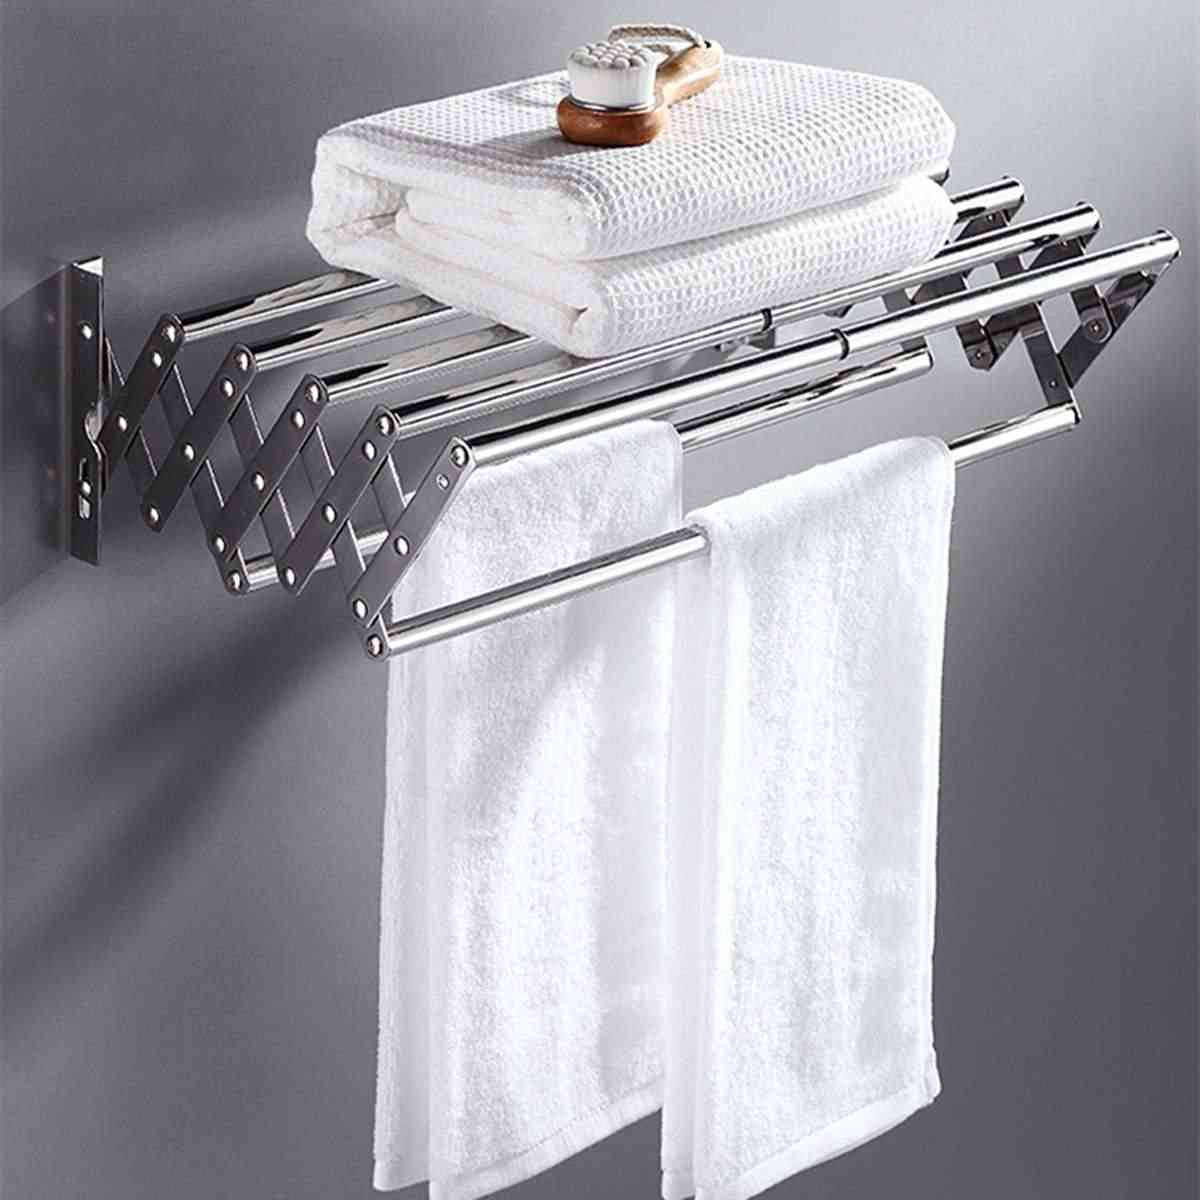 Steel Bathroom Towel Rack